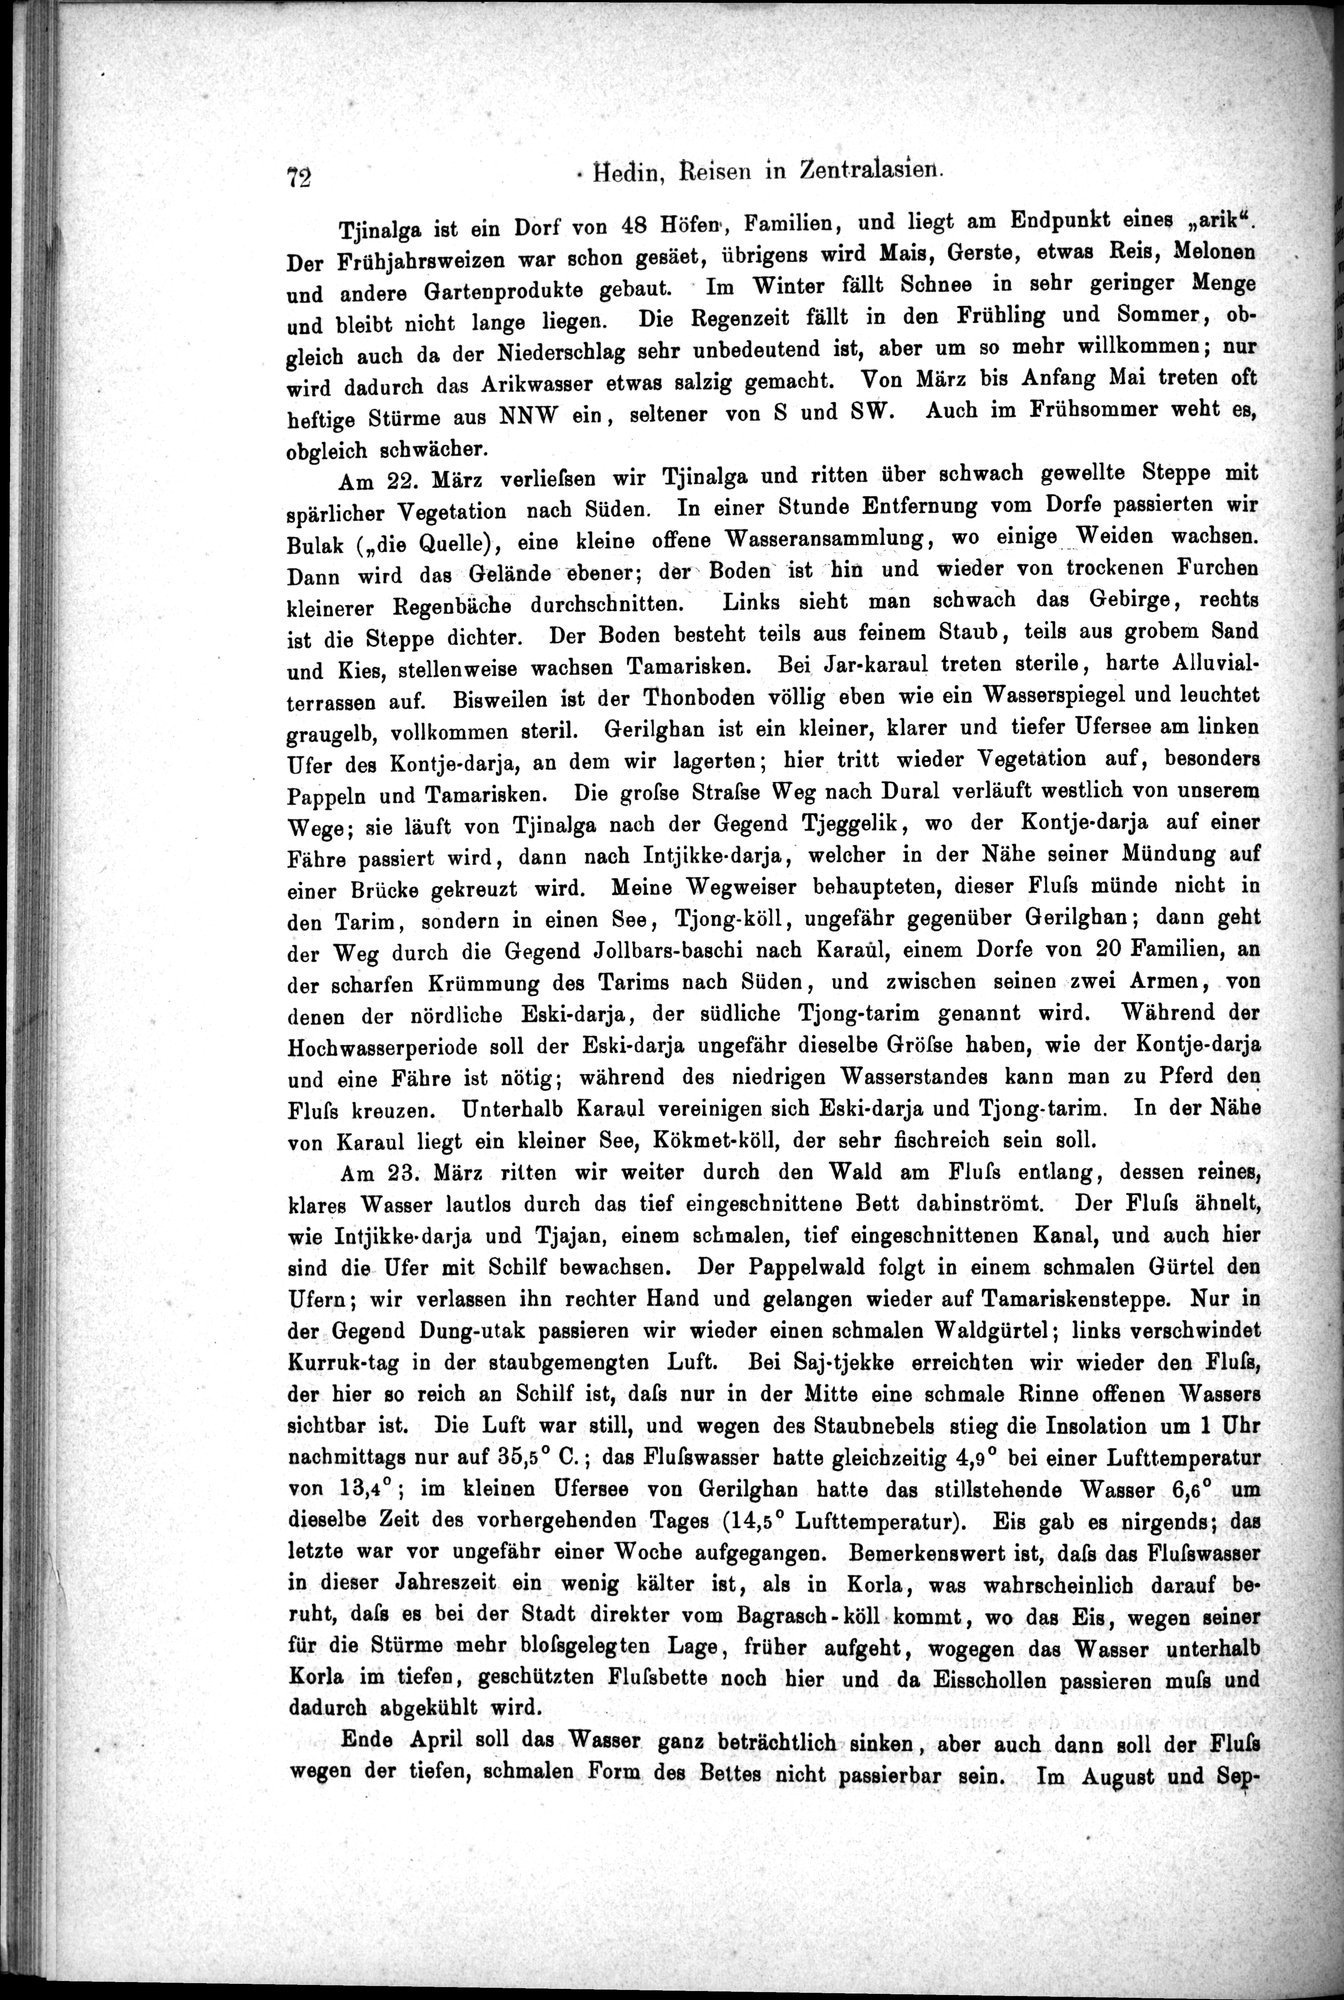 Die Geographische-Wissenschaftlichen Ergebnisse meiner Reisen in Zentralasien, 1894-1897 : vol.1 / Page 84 (Grayscale High Resolution Image)